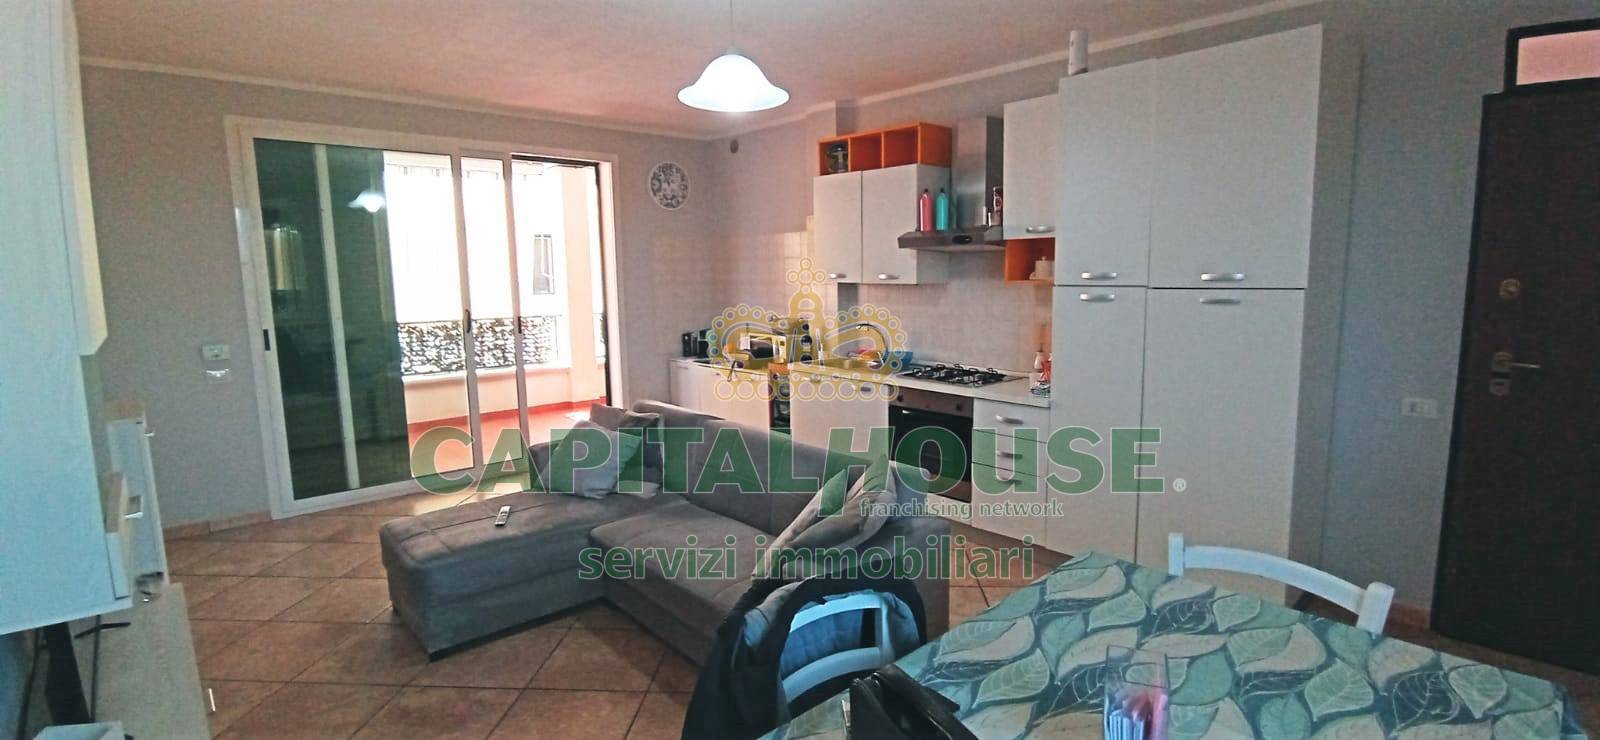 Appartamento in vendita a Sannicola, 3 locali, prezzo € 120.000 | PortaleAgenzieImmobiliari.it